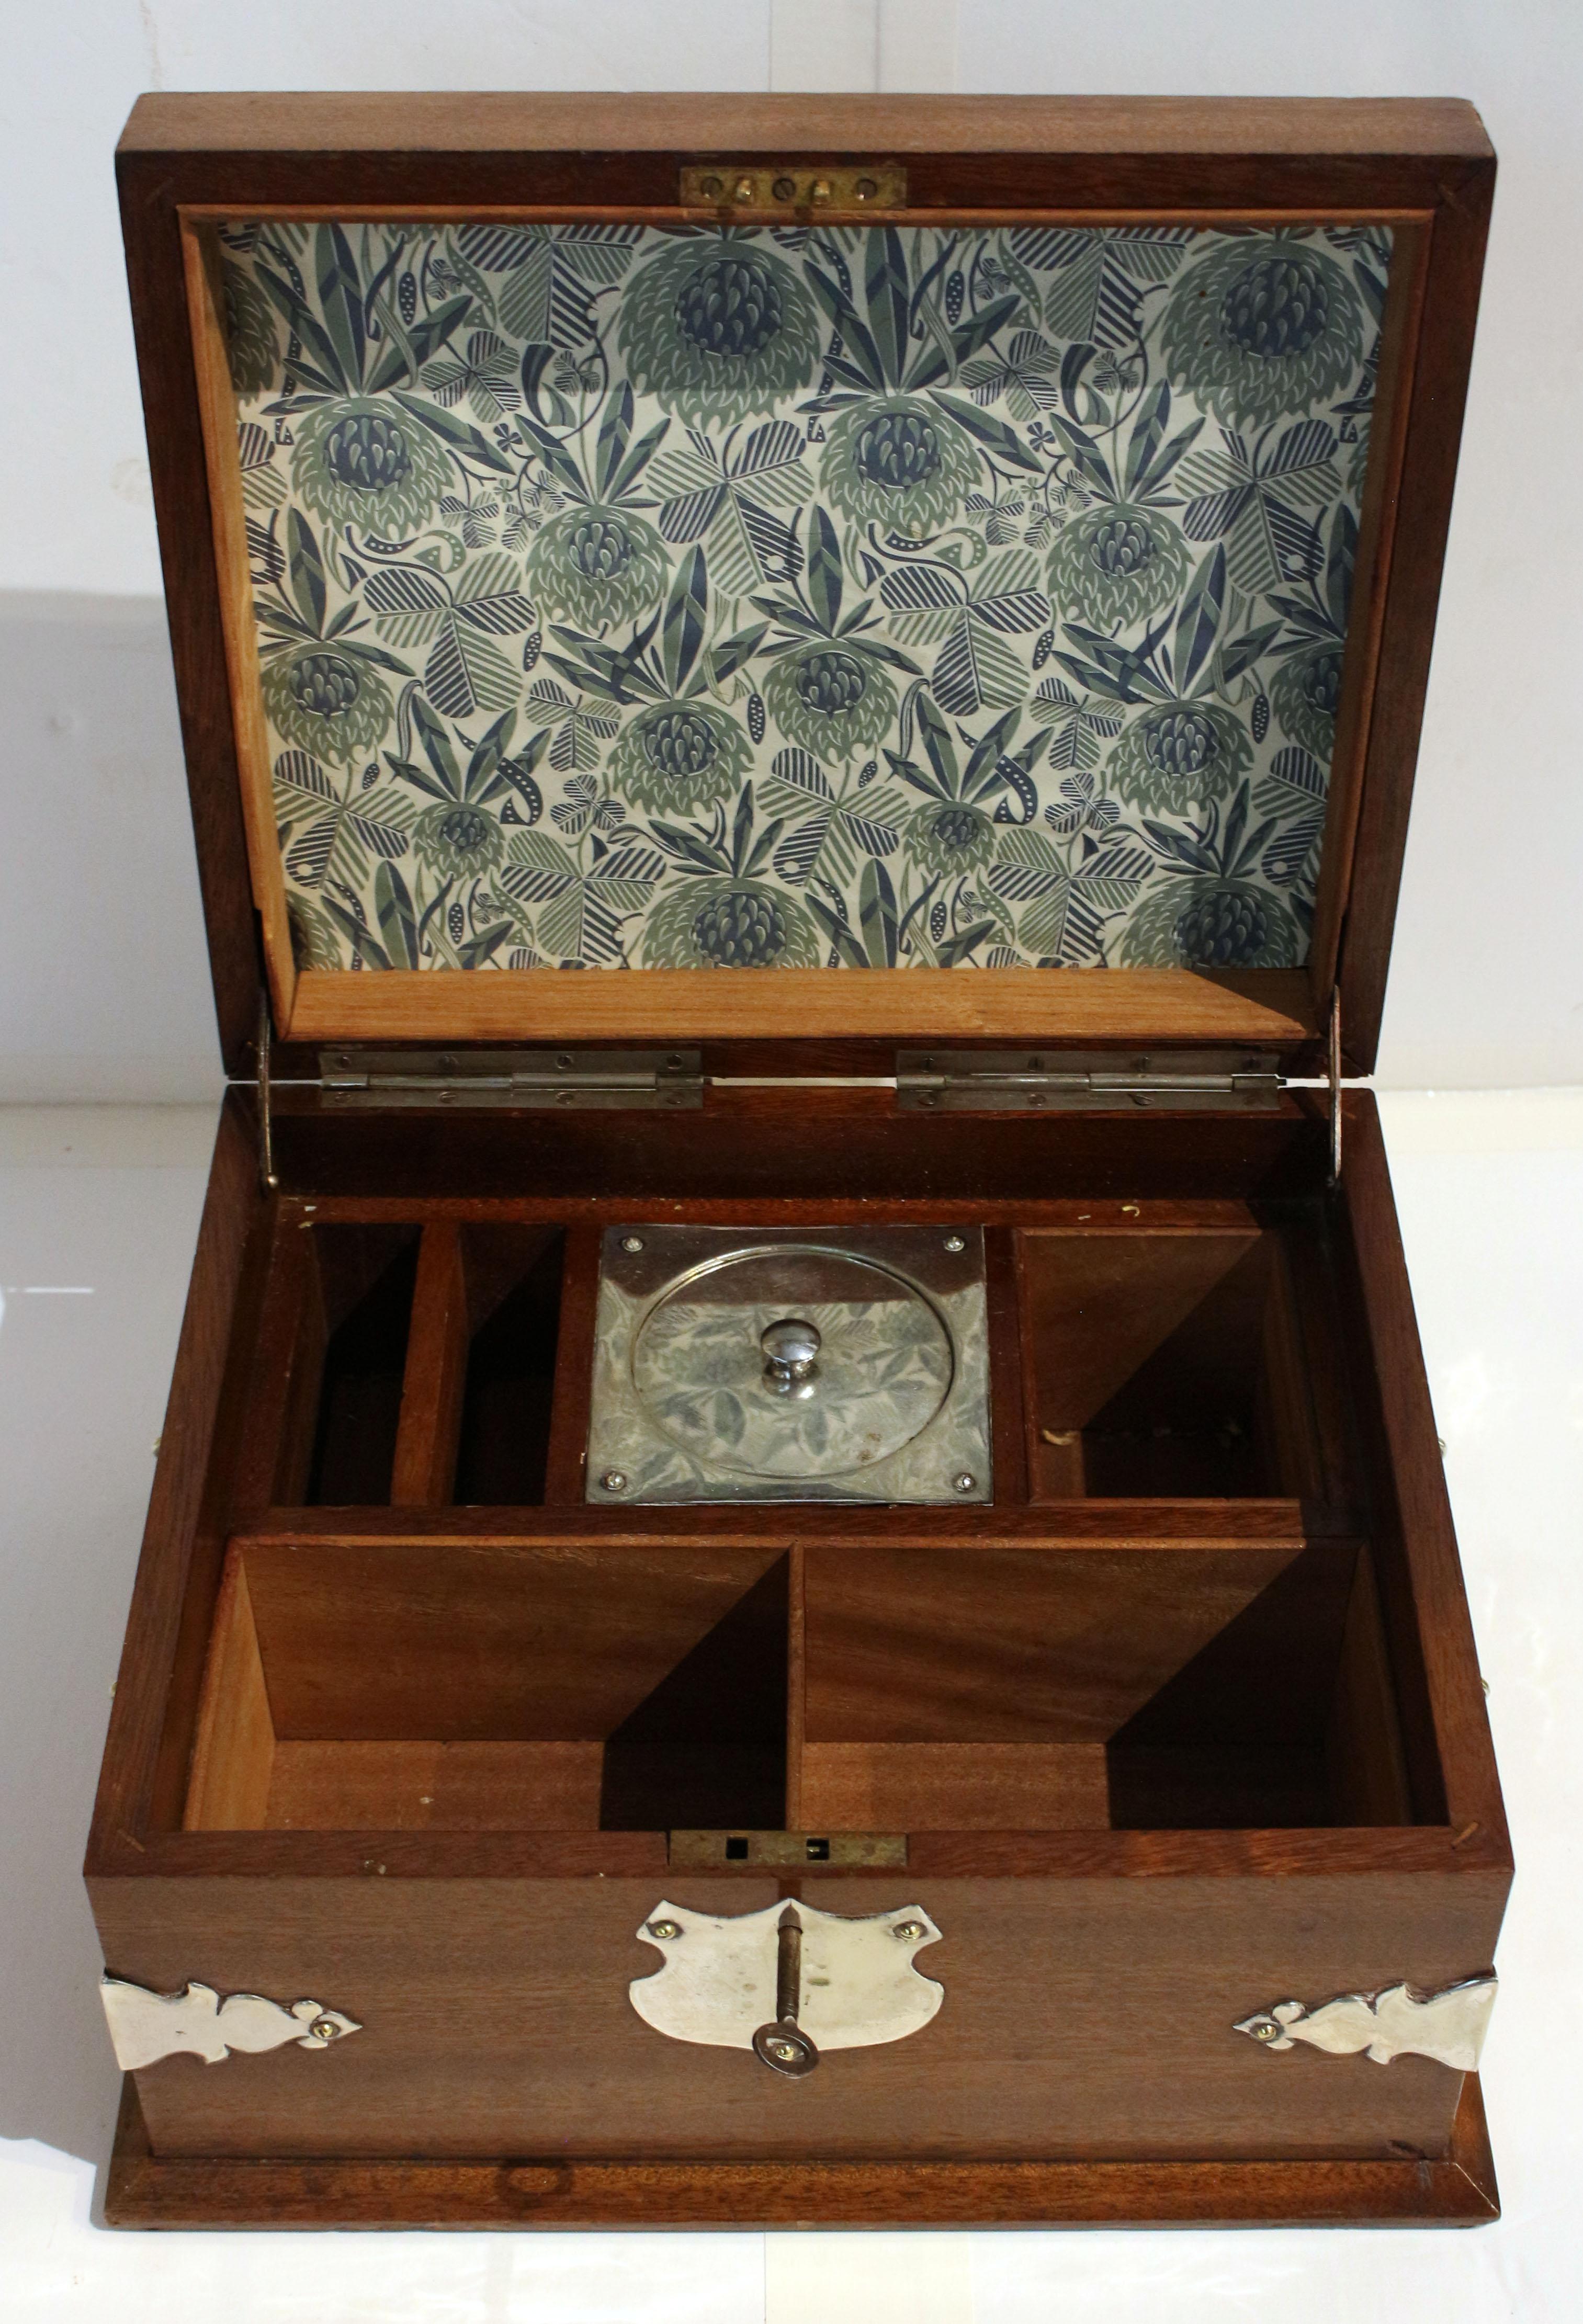 Other Circa 1870s Silverplate and Mahogany Humidor Box